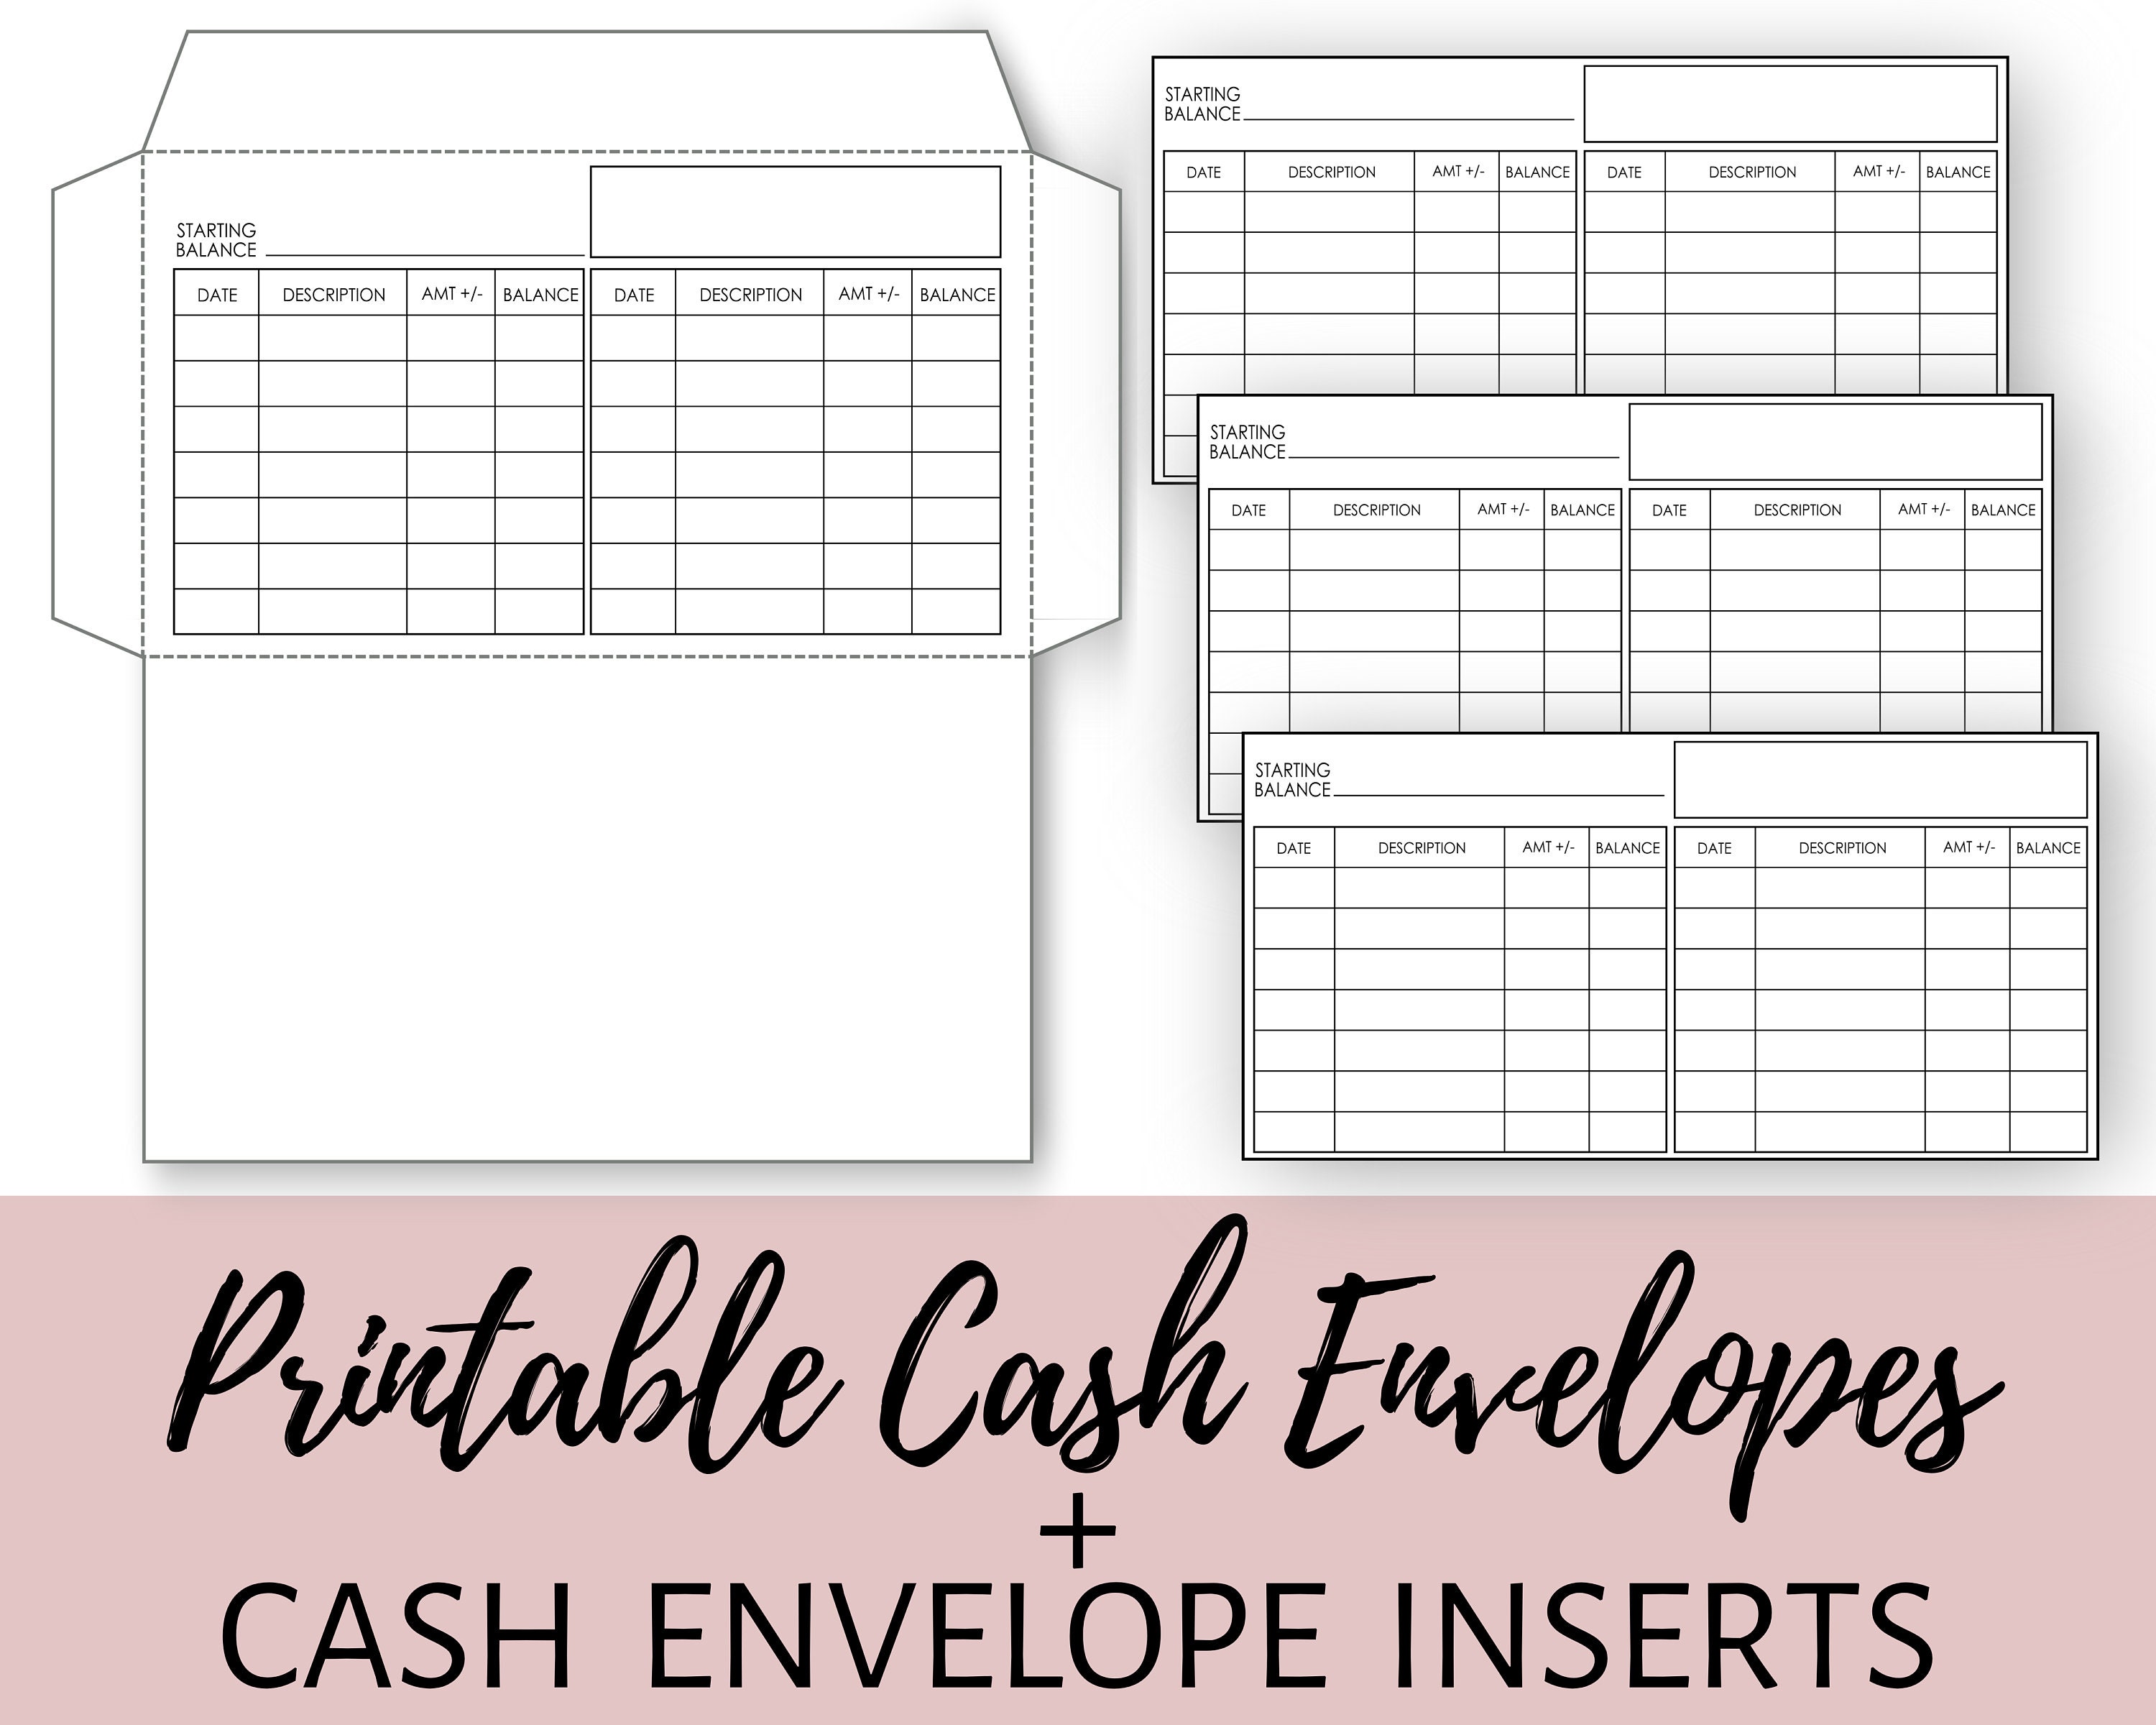 cash-envelope-system-printable-cash-envelope-inserts-etsy